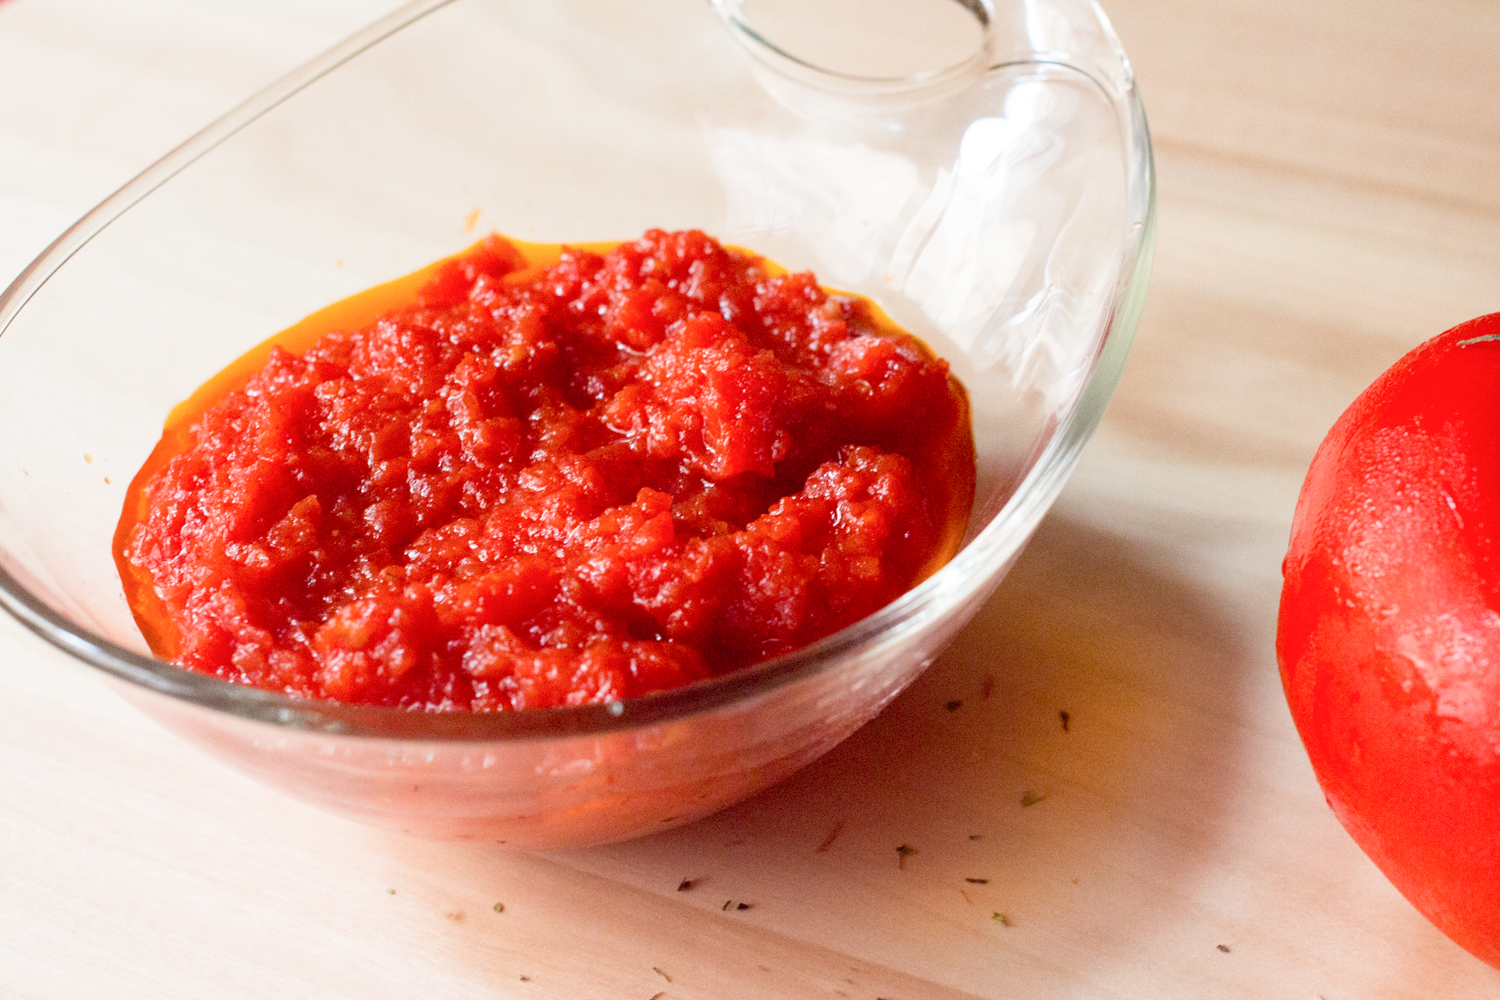 Salsa de tomate – tomate frito casero